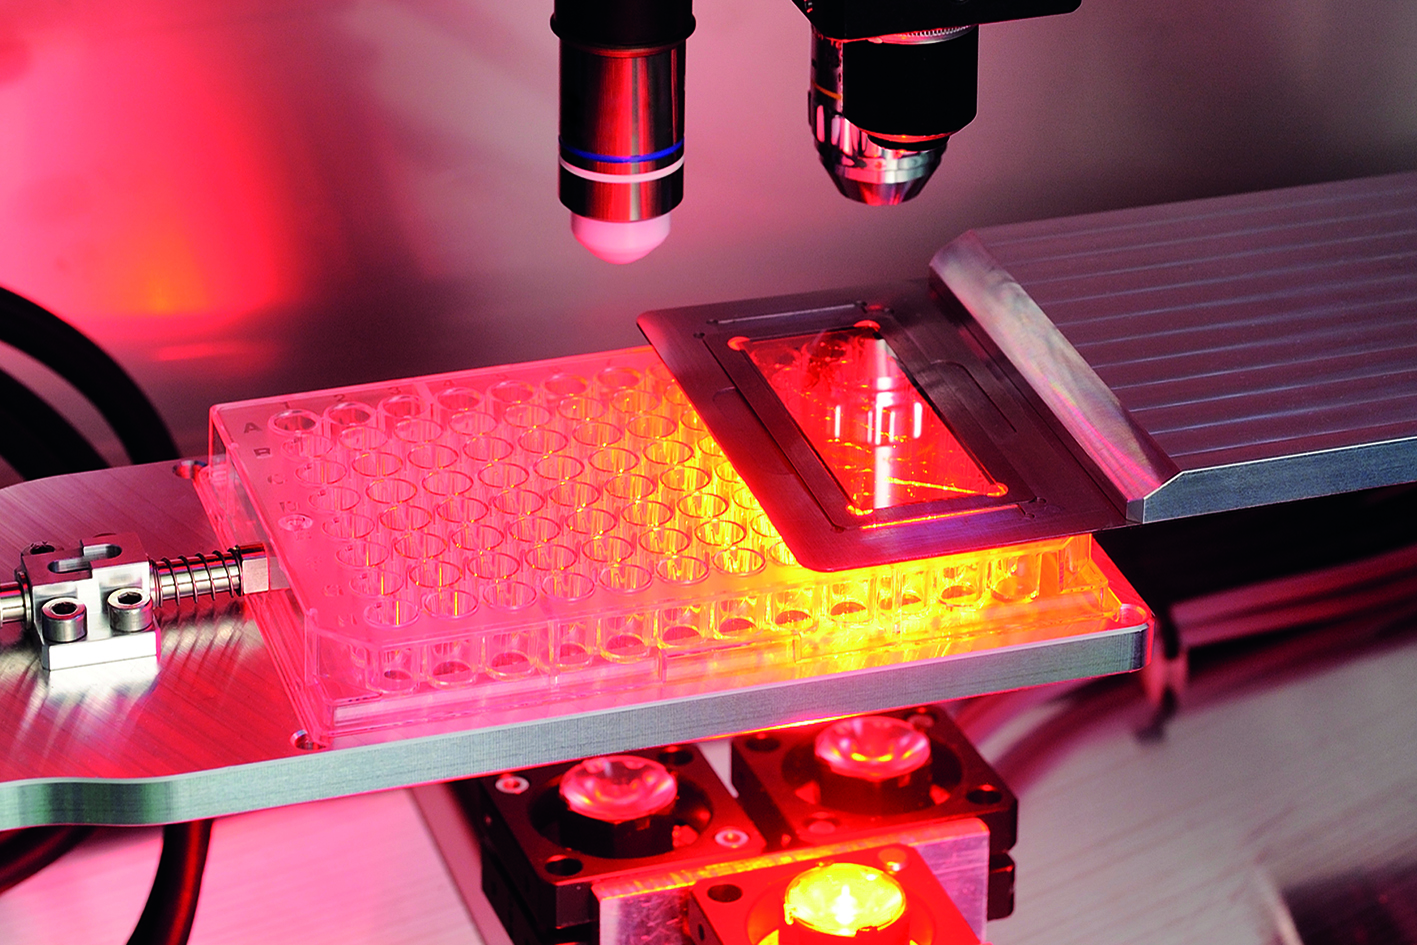 Kontaktfreie Herstellung von Zellkulturen mittels Mikroskopie und laserinduziertem Vorwärtstransfer